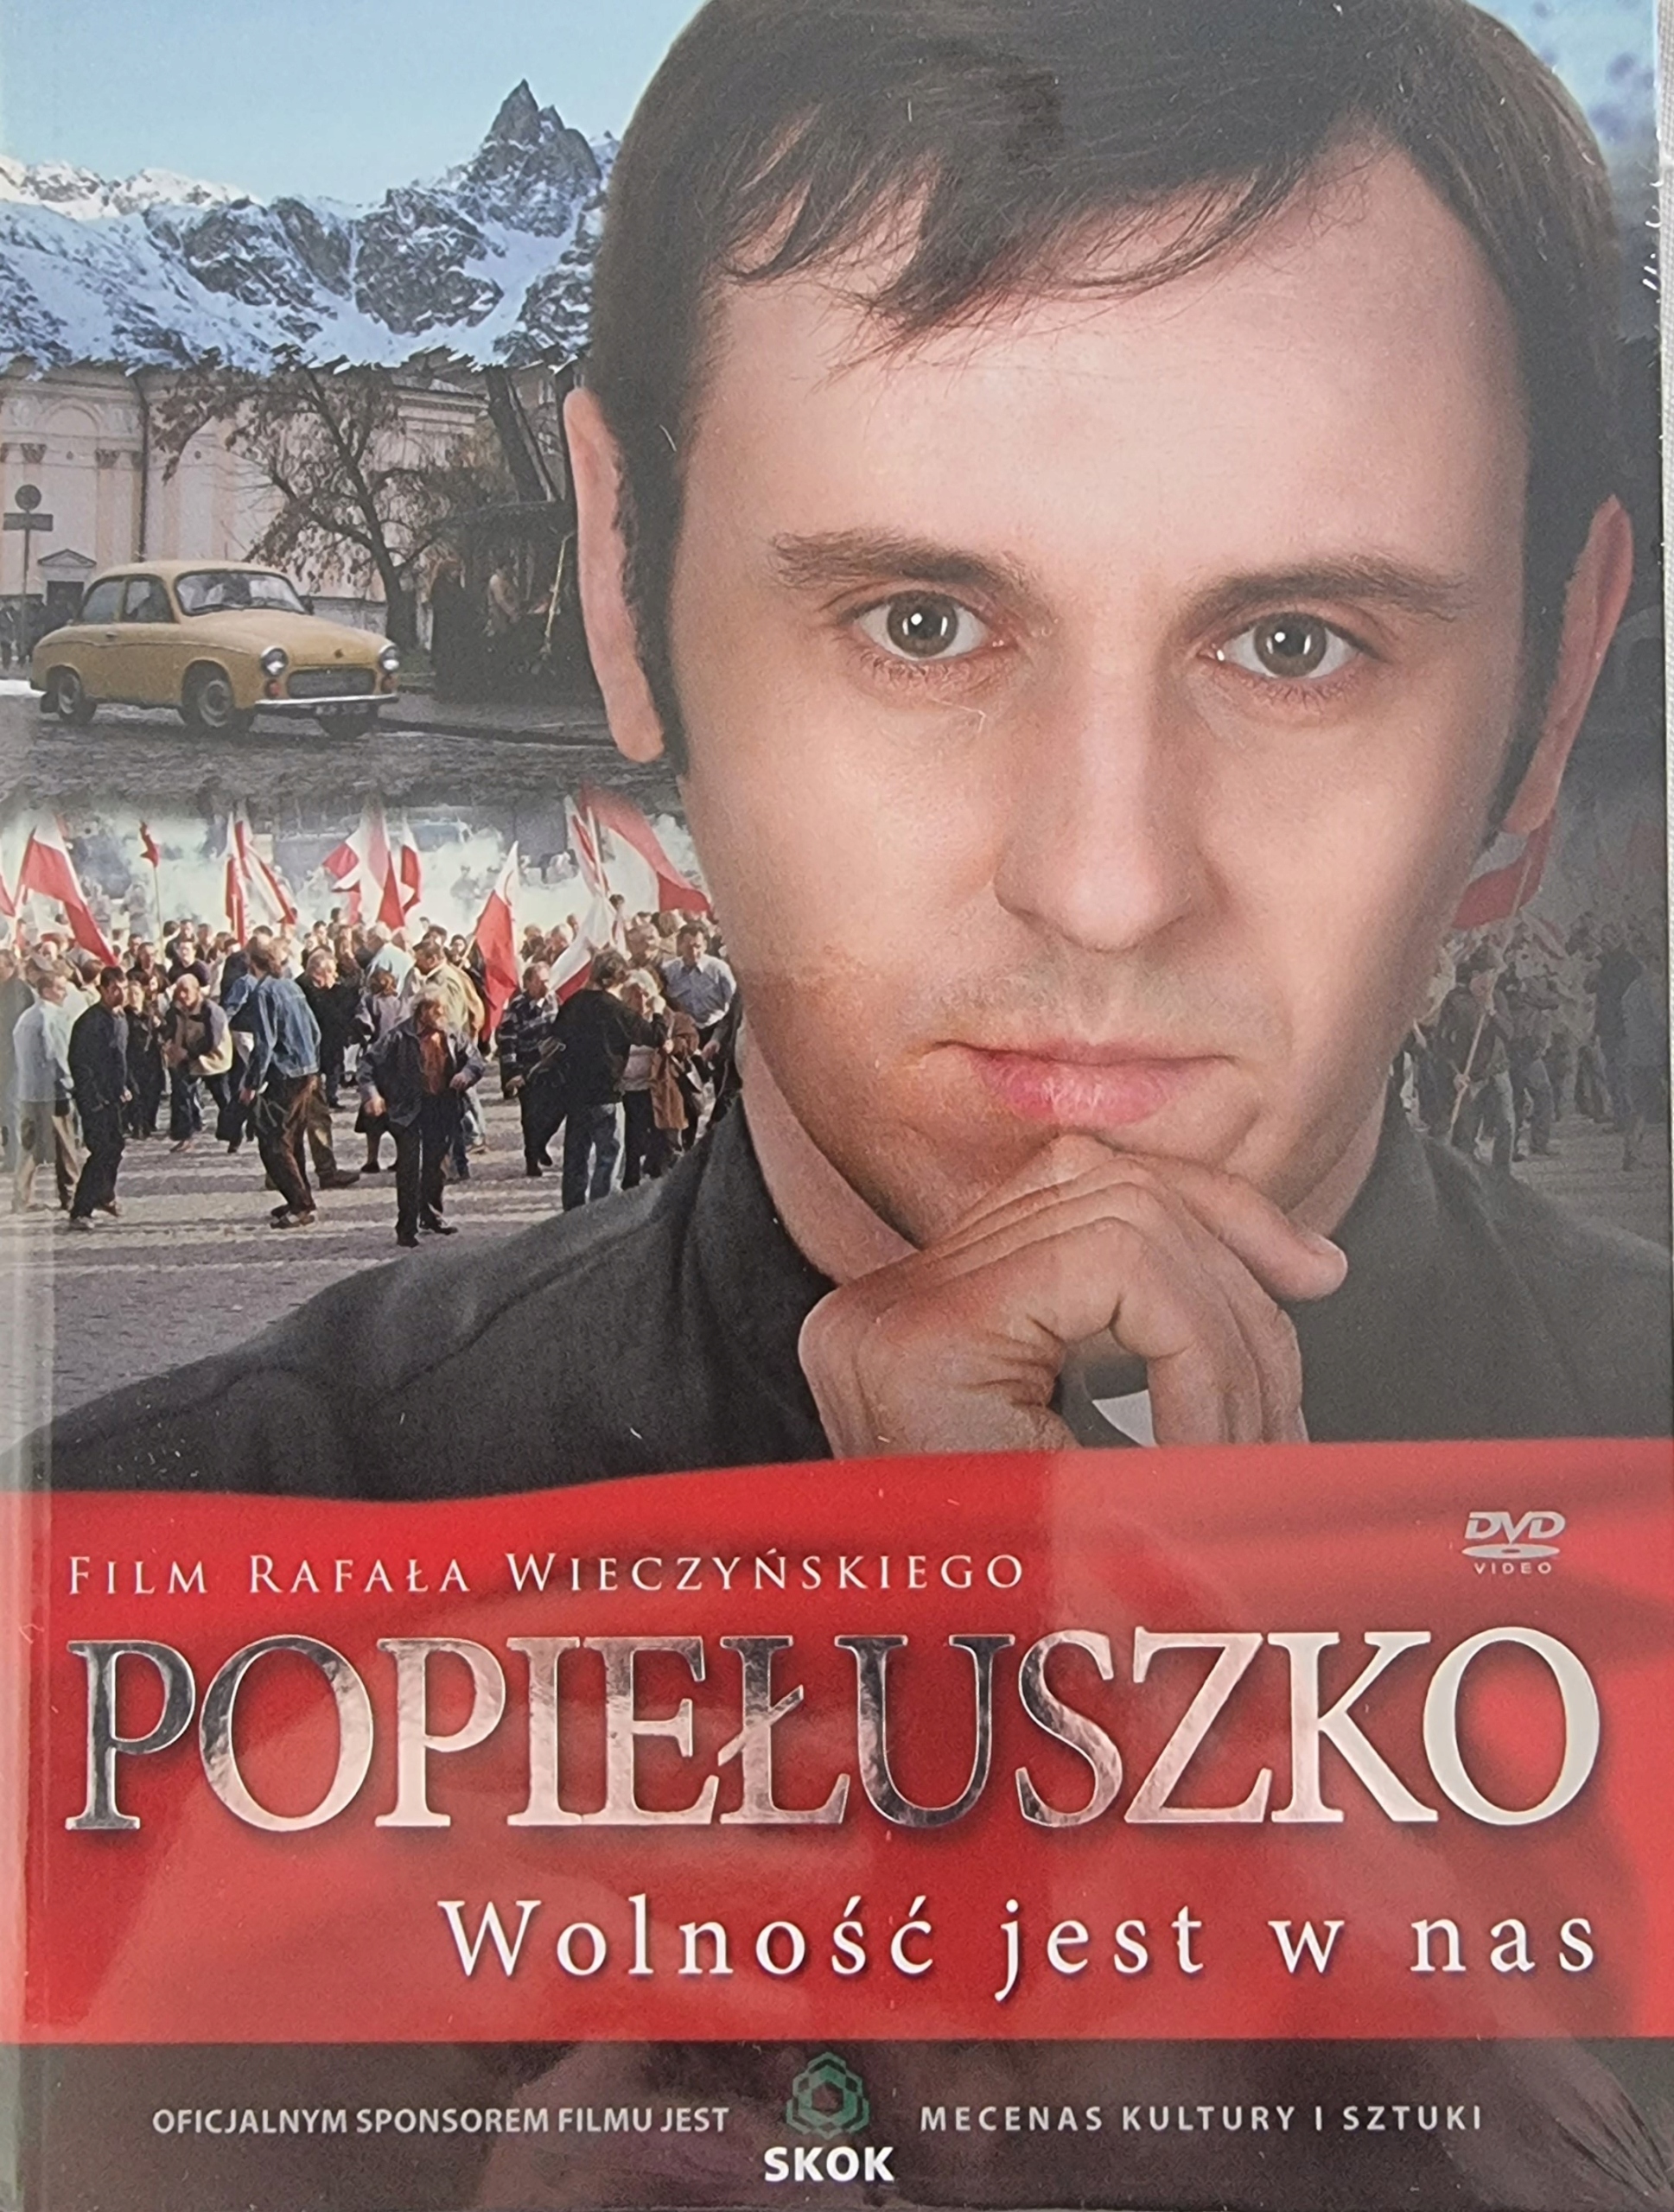 DVD Popiełuszko Wolność jest w nas 12371375493 - Sklepy, Opinie, Ceny w  Allegro.pl